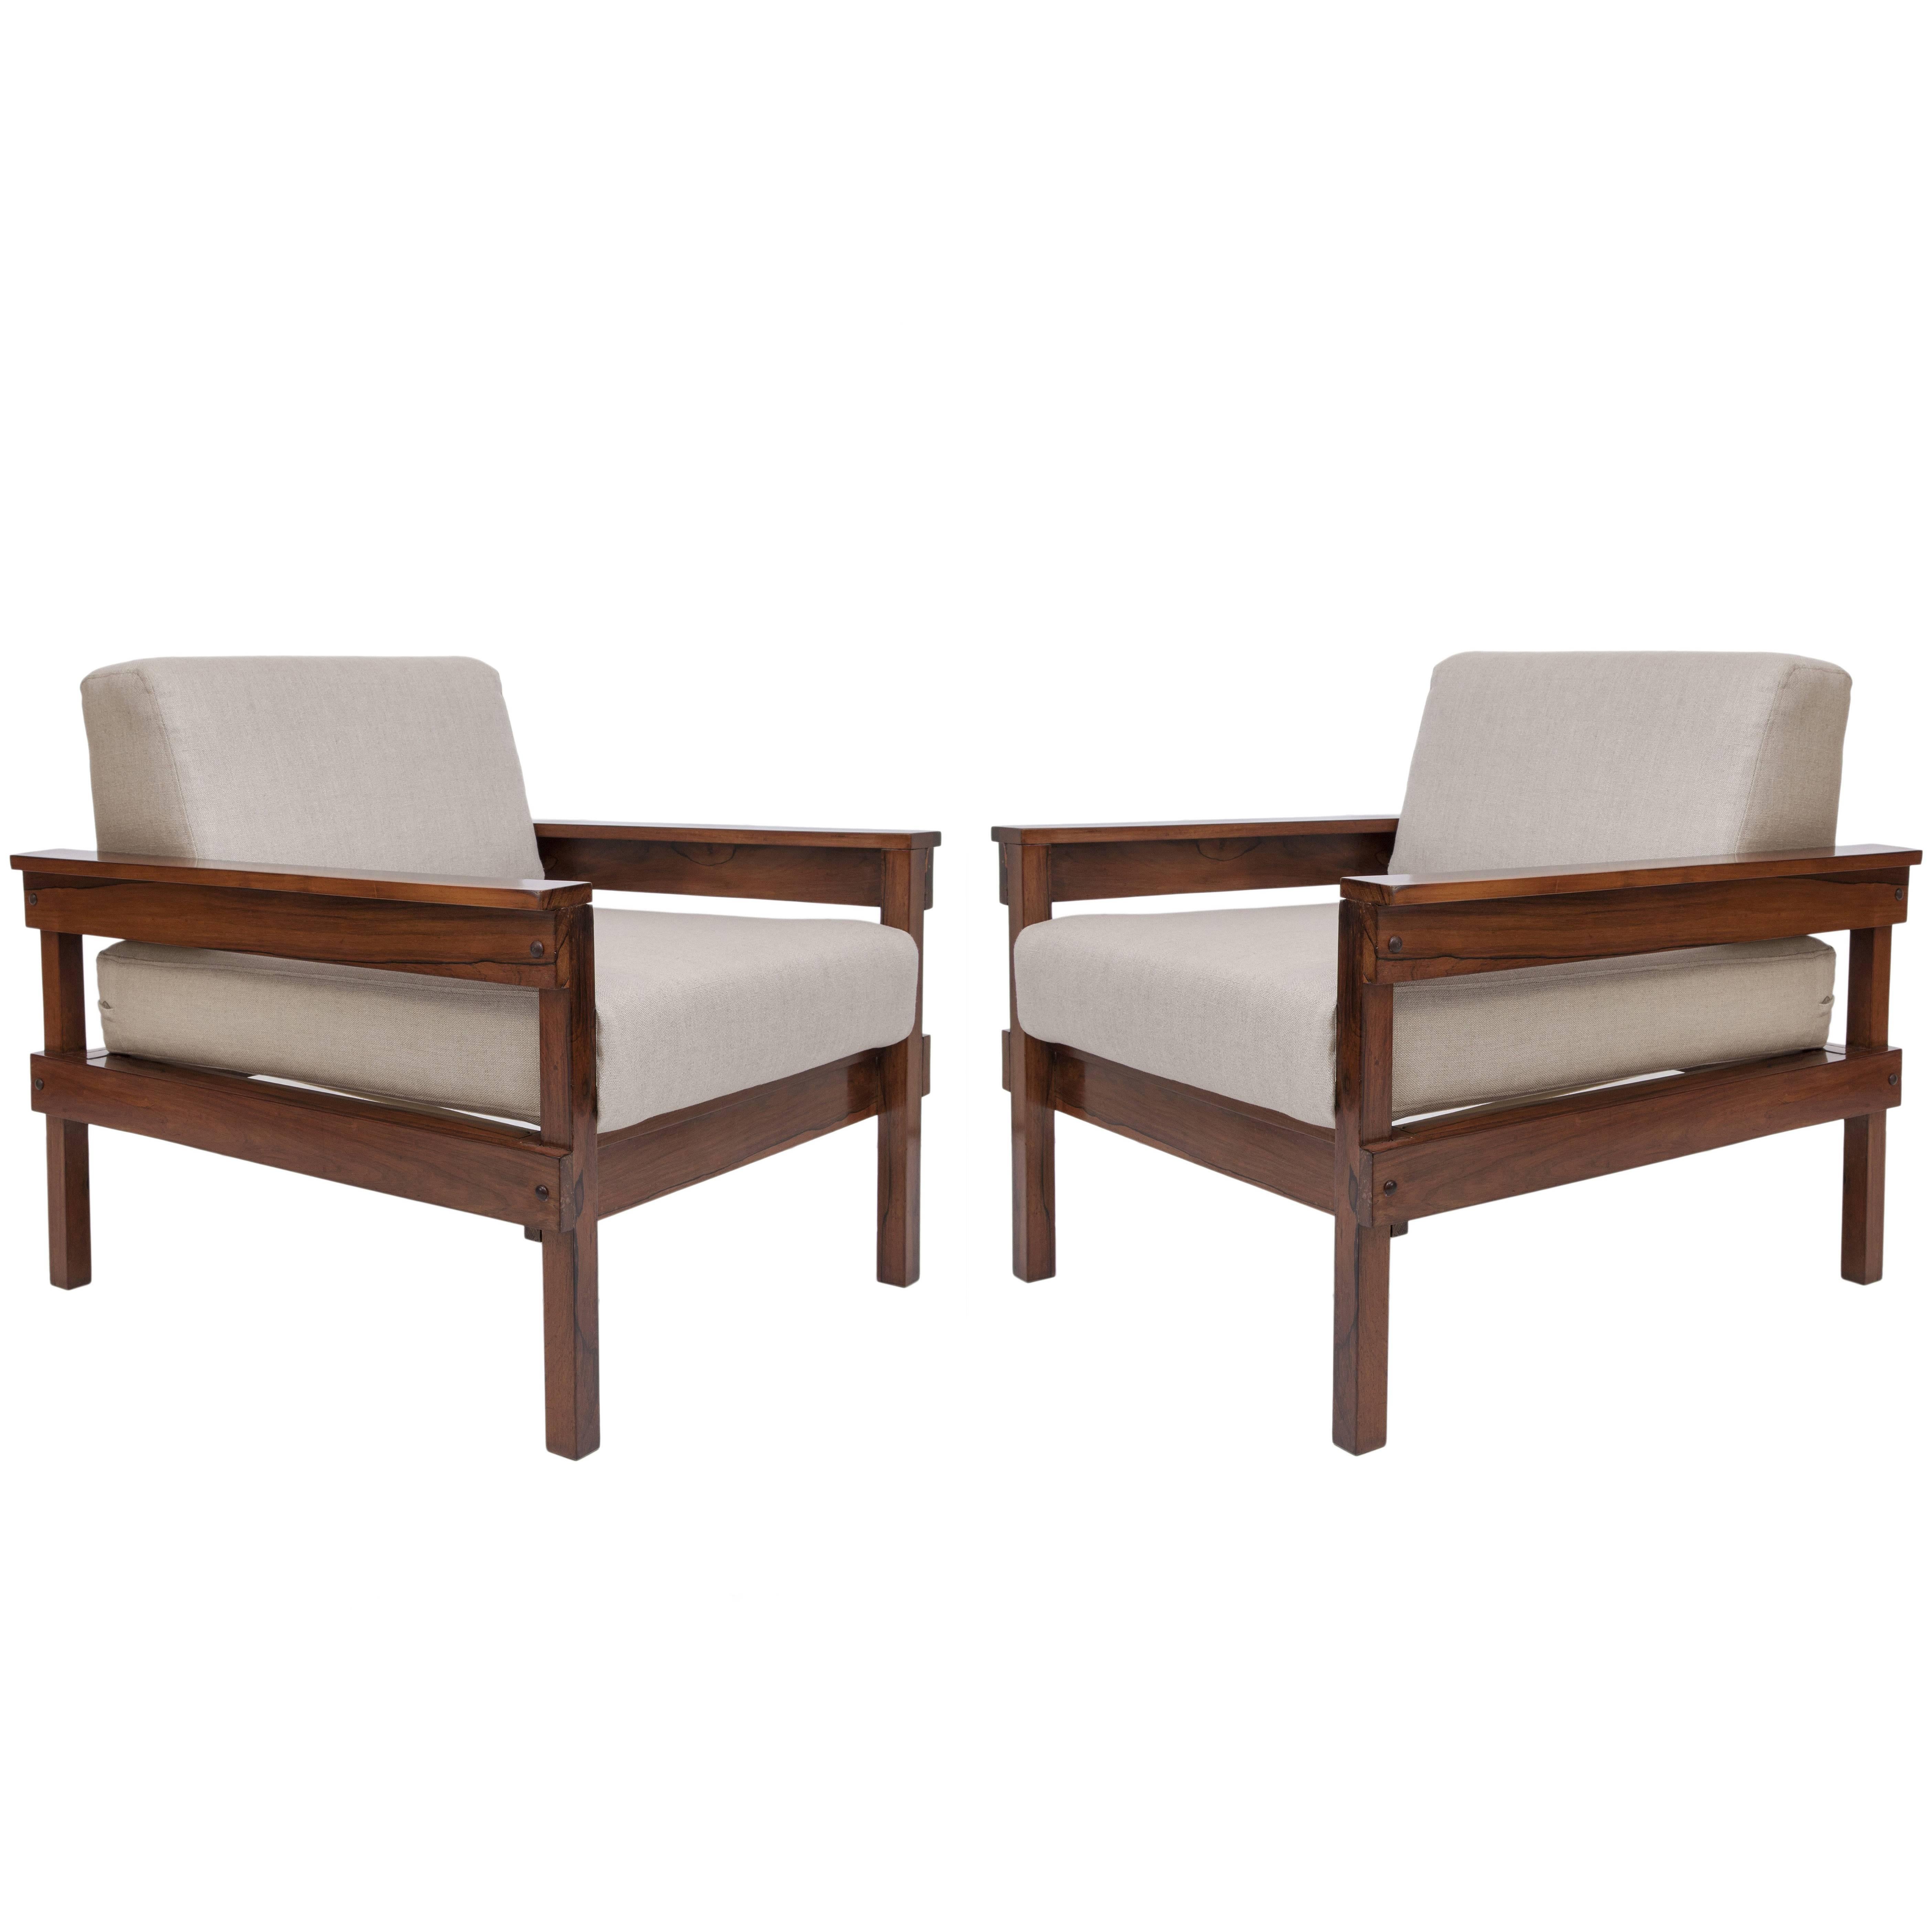 Pair of Midcentury Brazilian Jacaranda Armchairs Upholstered in Beige Linen